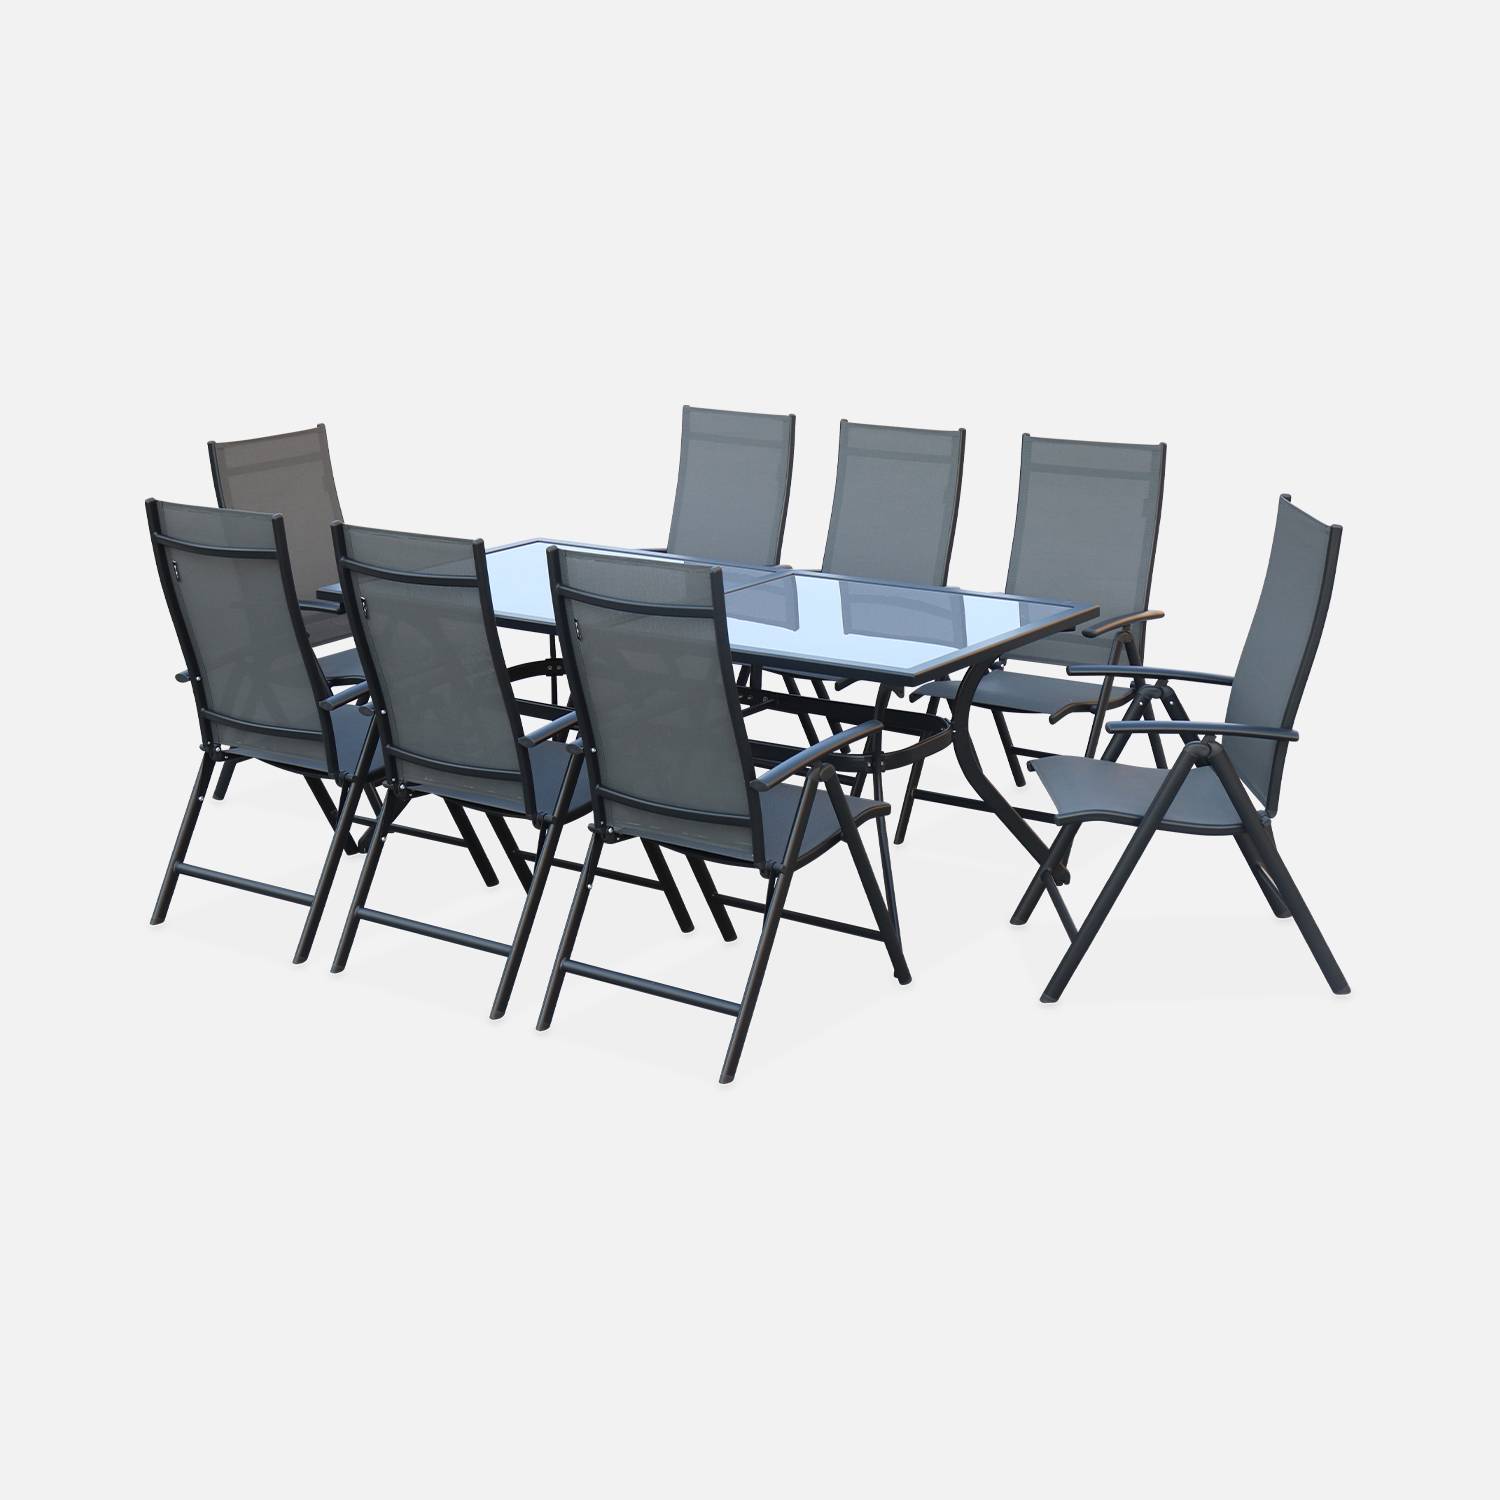 Salon de jardin en aluminium et textilène - Naevia - Gris, Anthracite - 8 places - 1 grande table rectangulaire, 8 fauteuils pliables Photo2